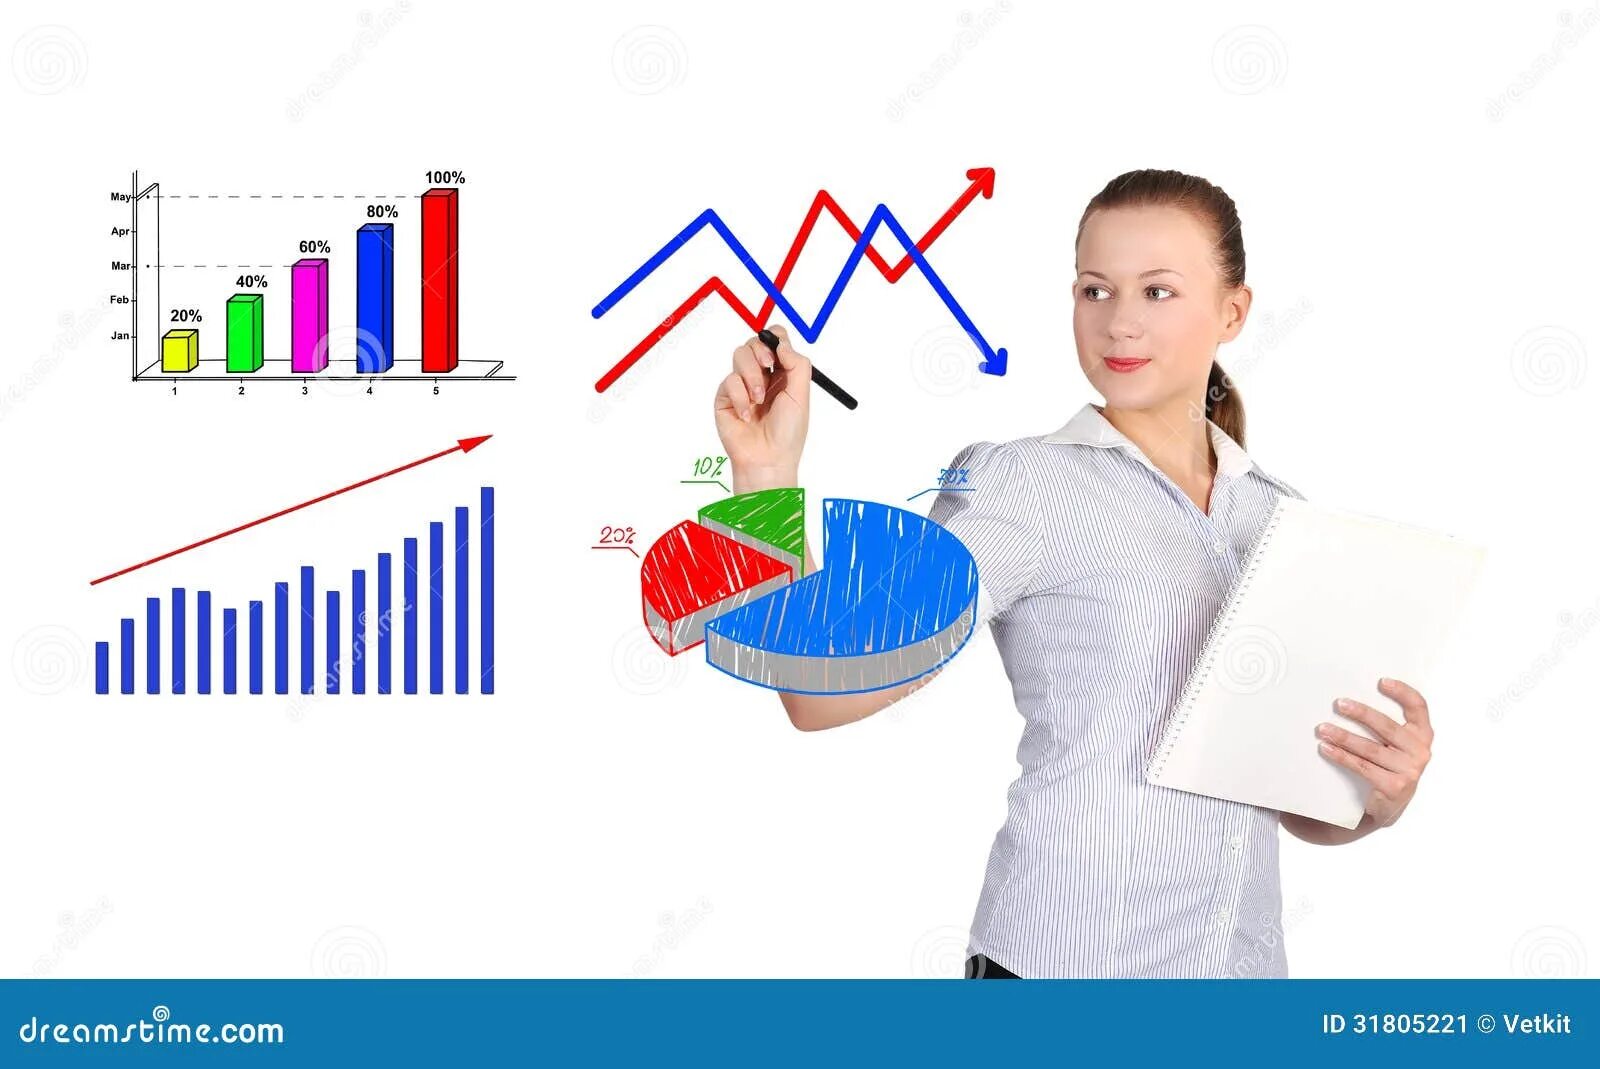 Маркетинг изучение спроса. Изучение спроса картинка. Девушка с диаграммой. Изучение спроса на услуги. Человек с диаграммами рисунока.